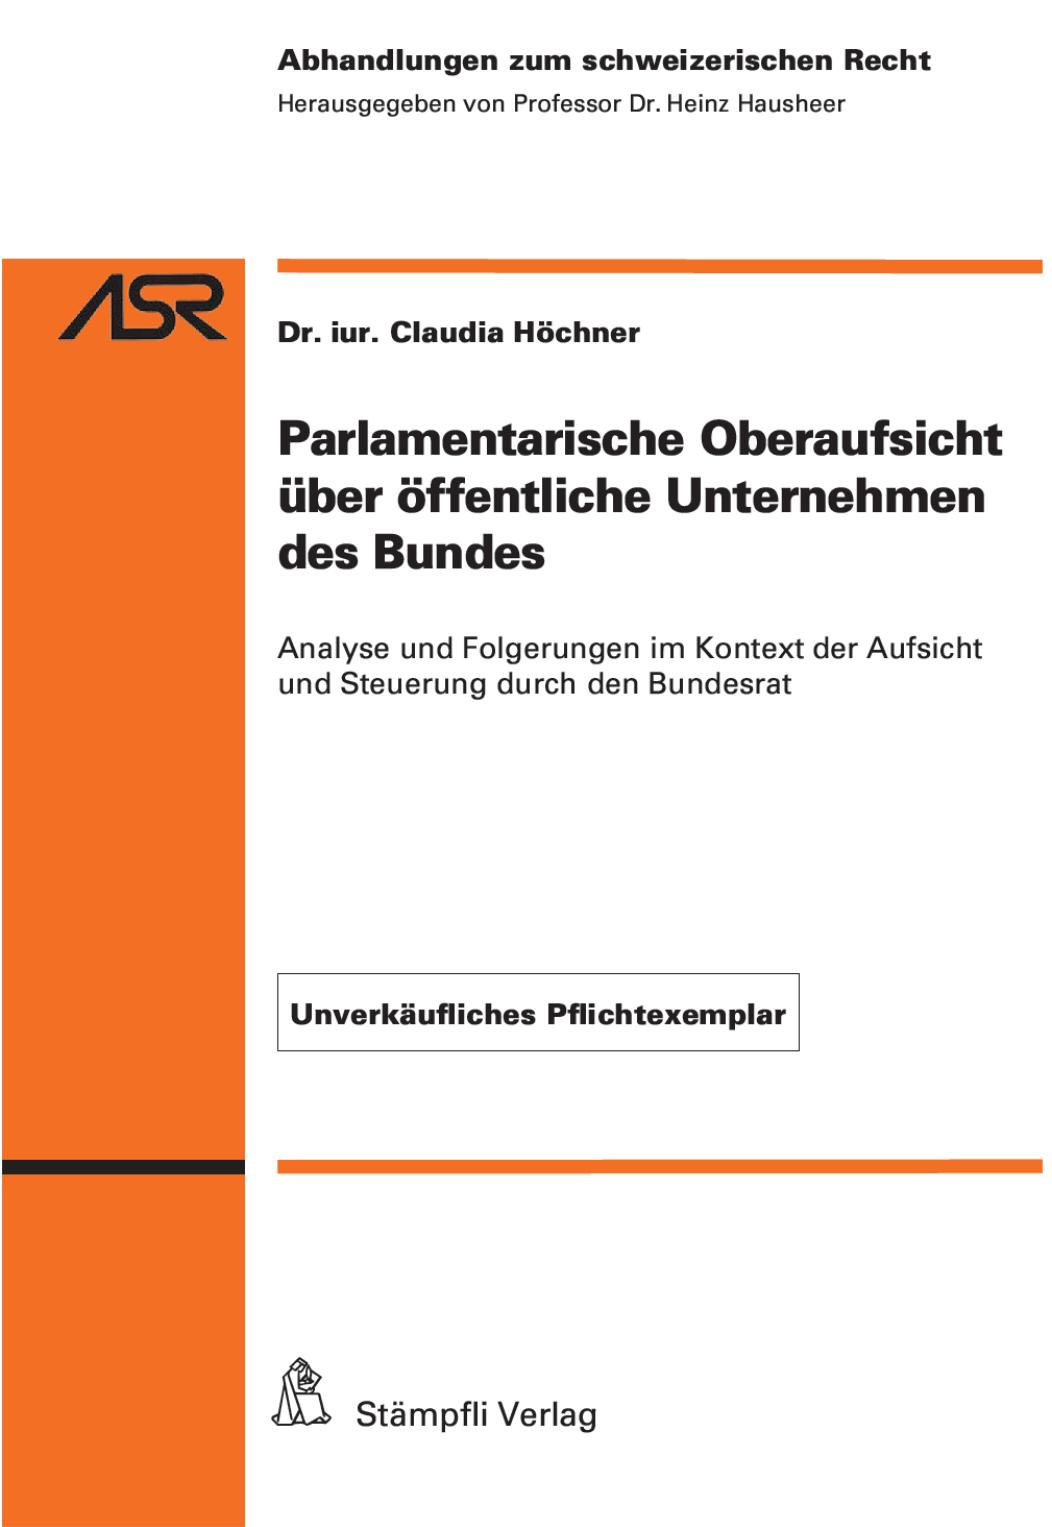 (eBook PDF)Parlamentarische Oberaufsicht ＆uuml;ber ＆ouml;ffentliche Unternehmen des Bundes by Claudia H＆ouml;chner